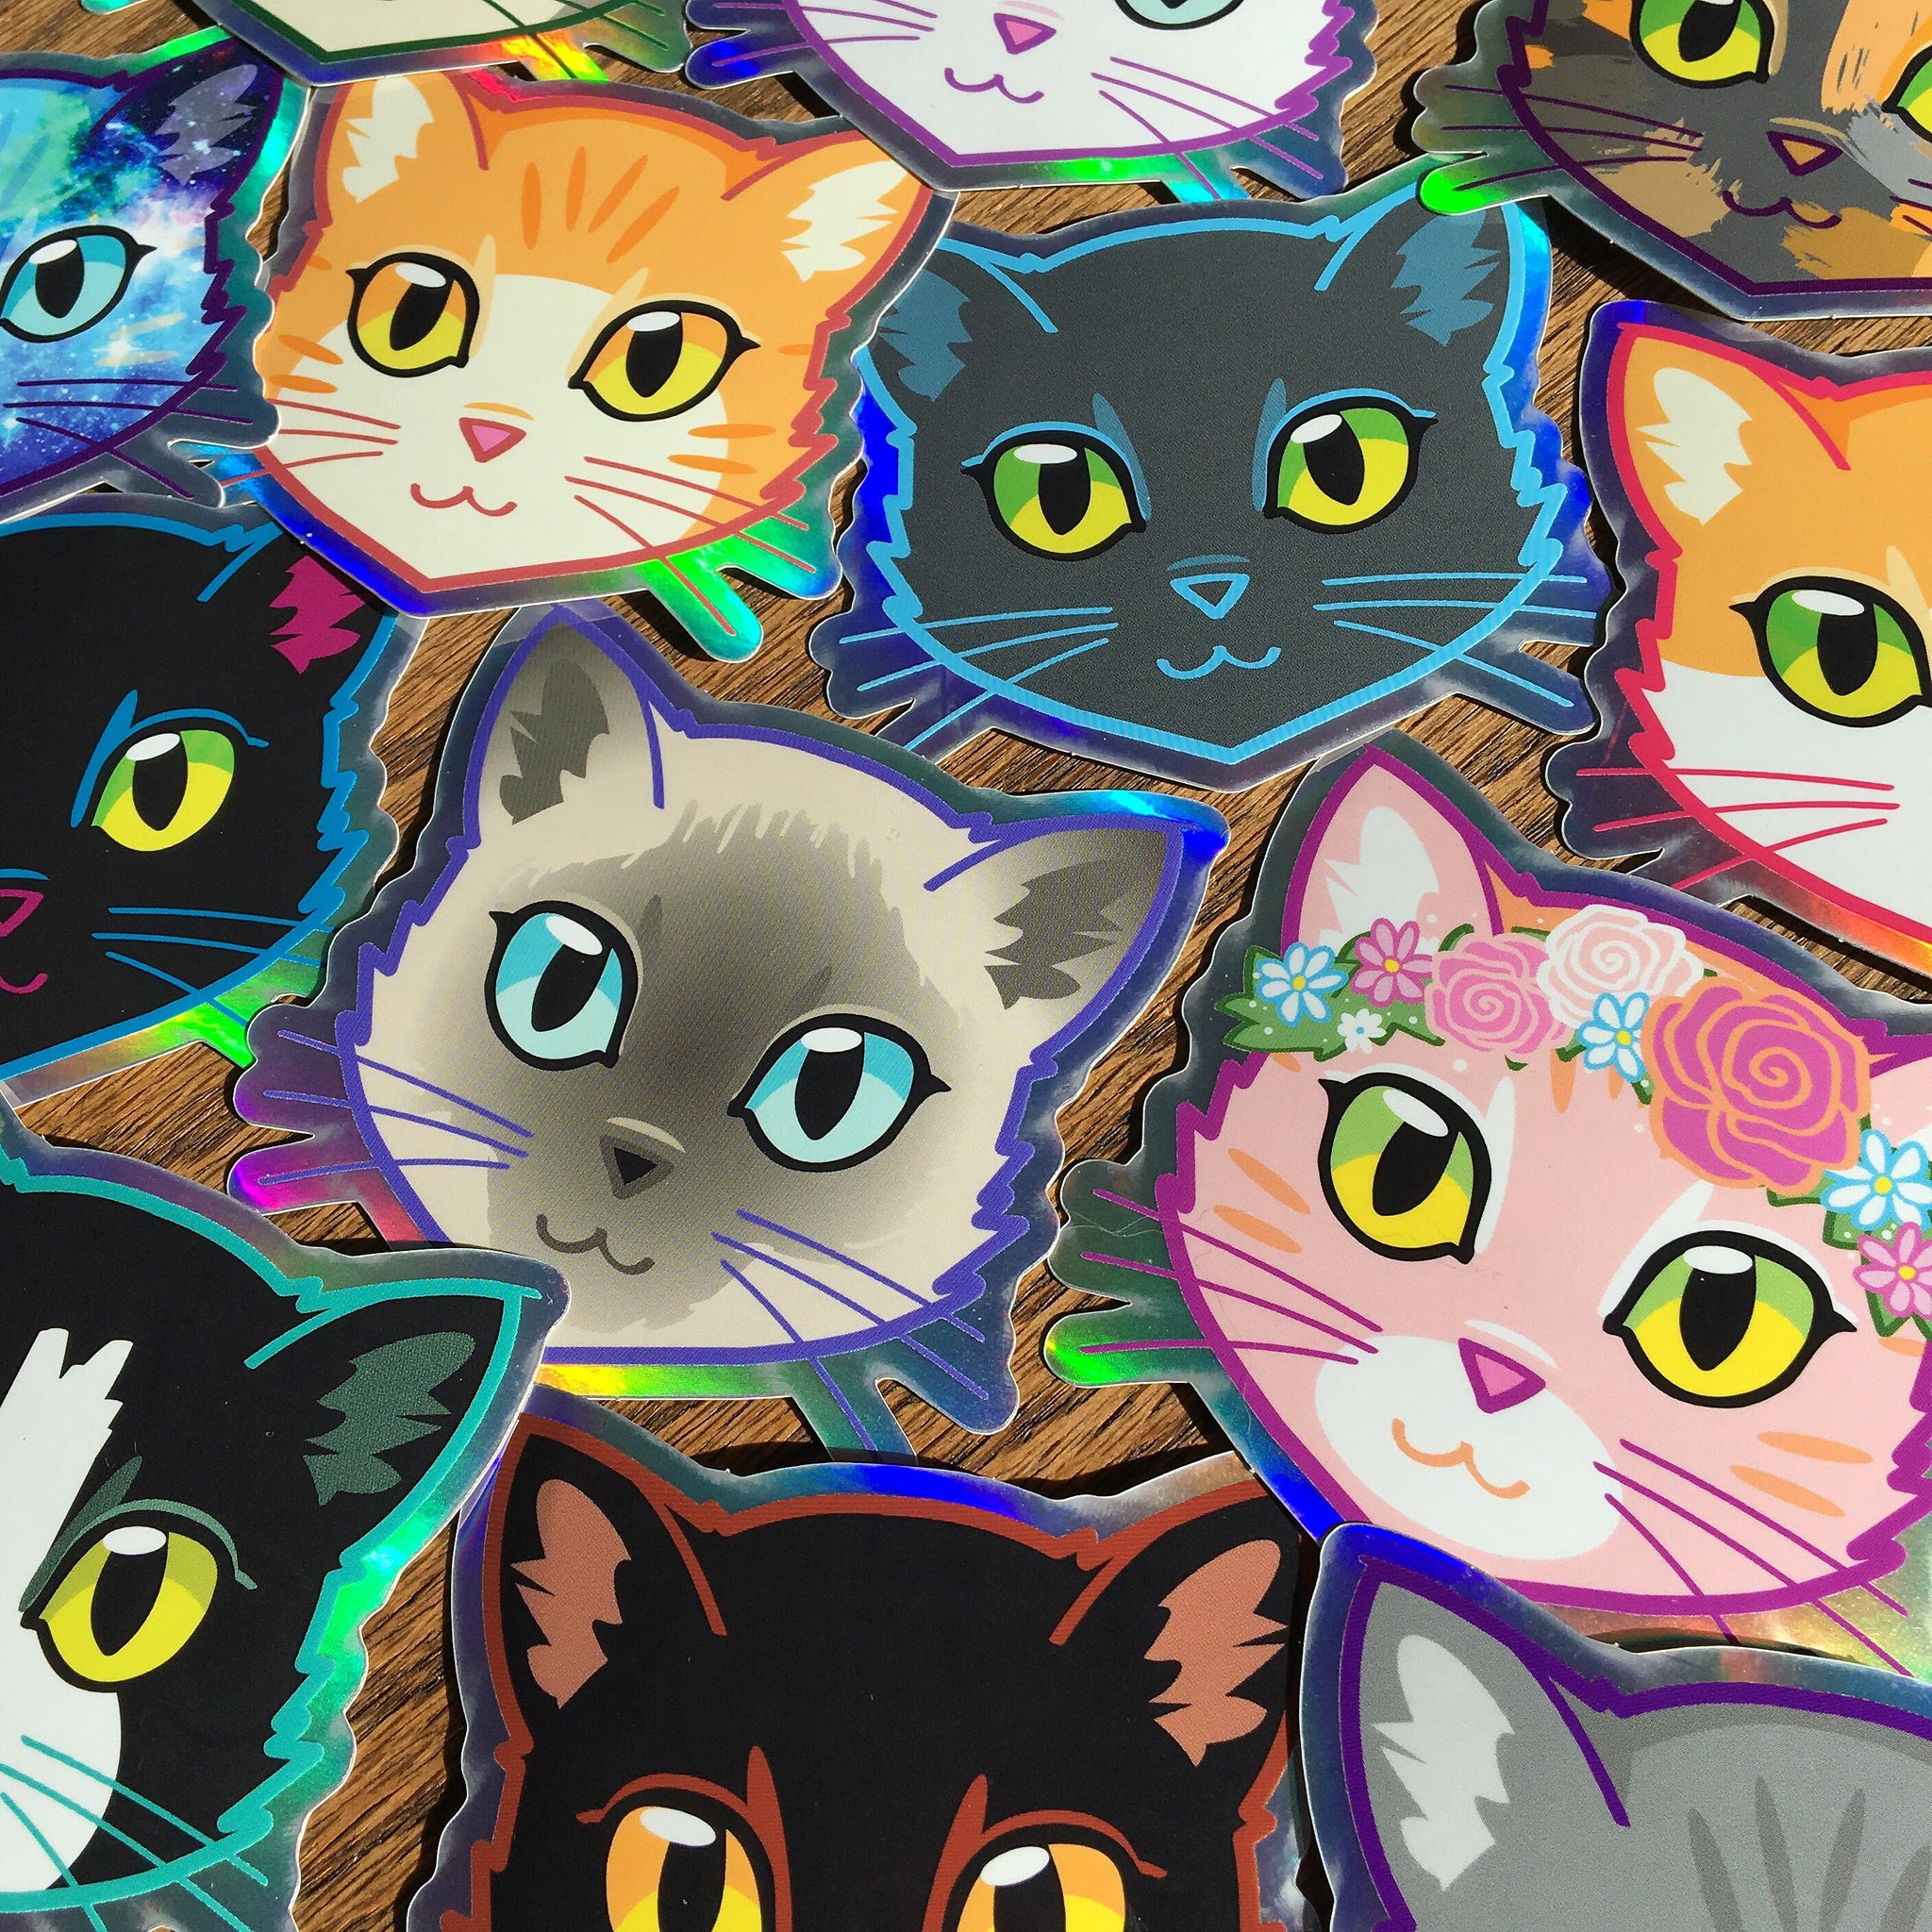 Scratchboard Cat Face by Lara H